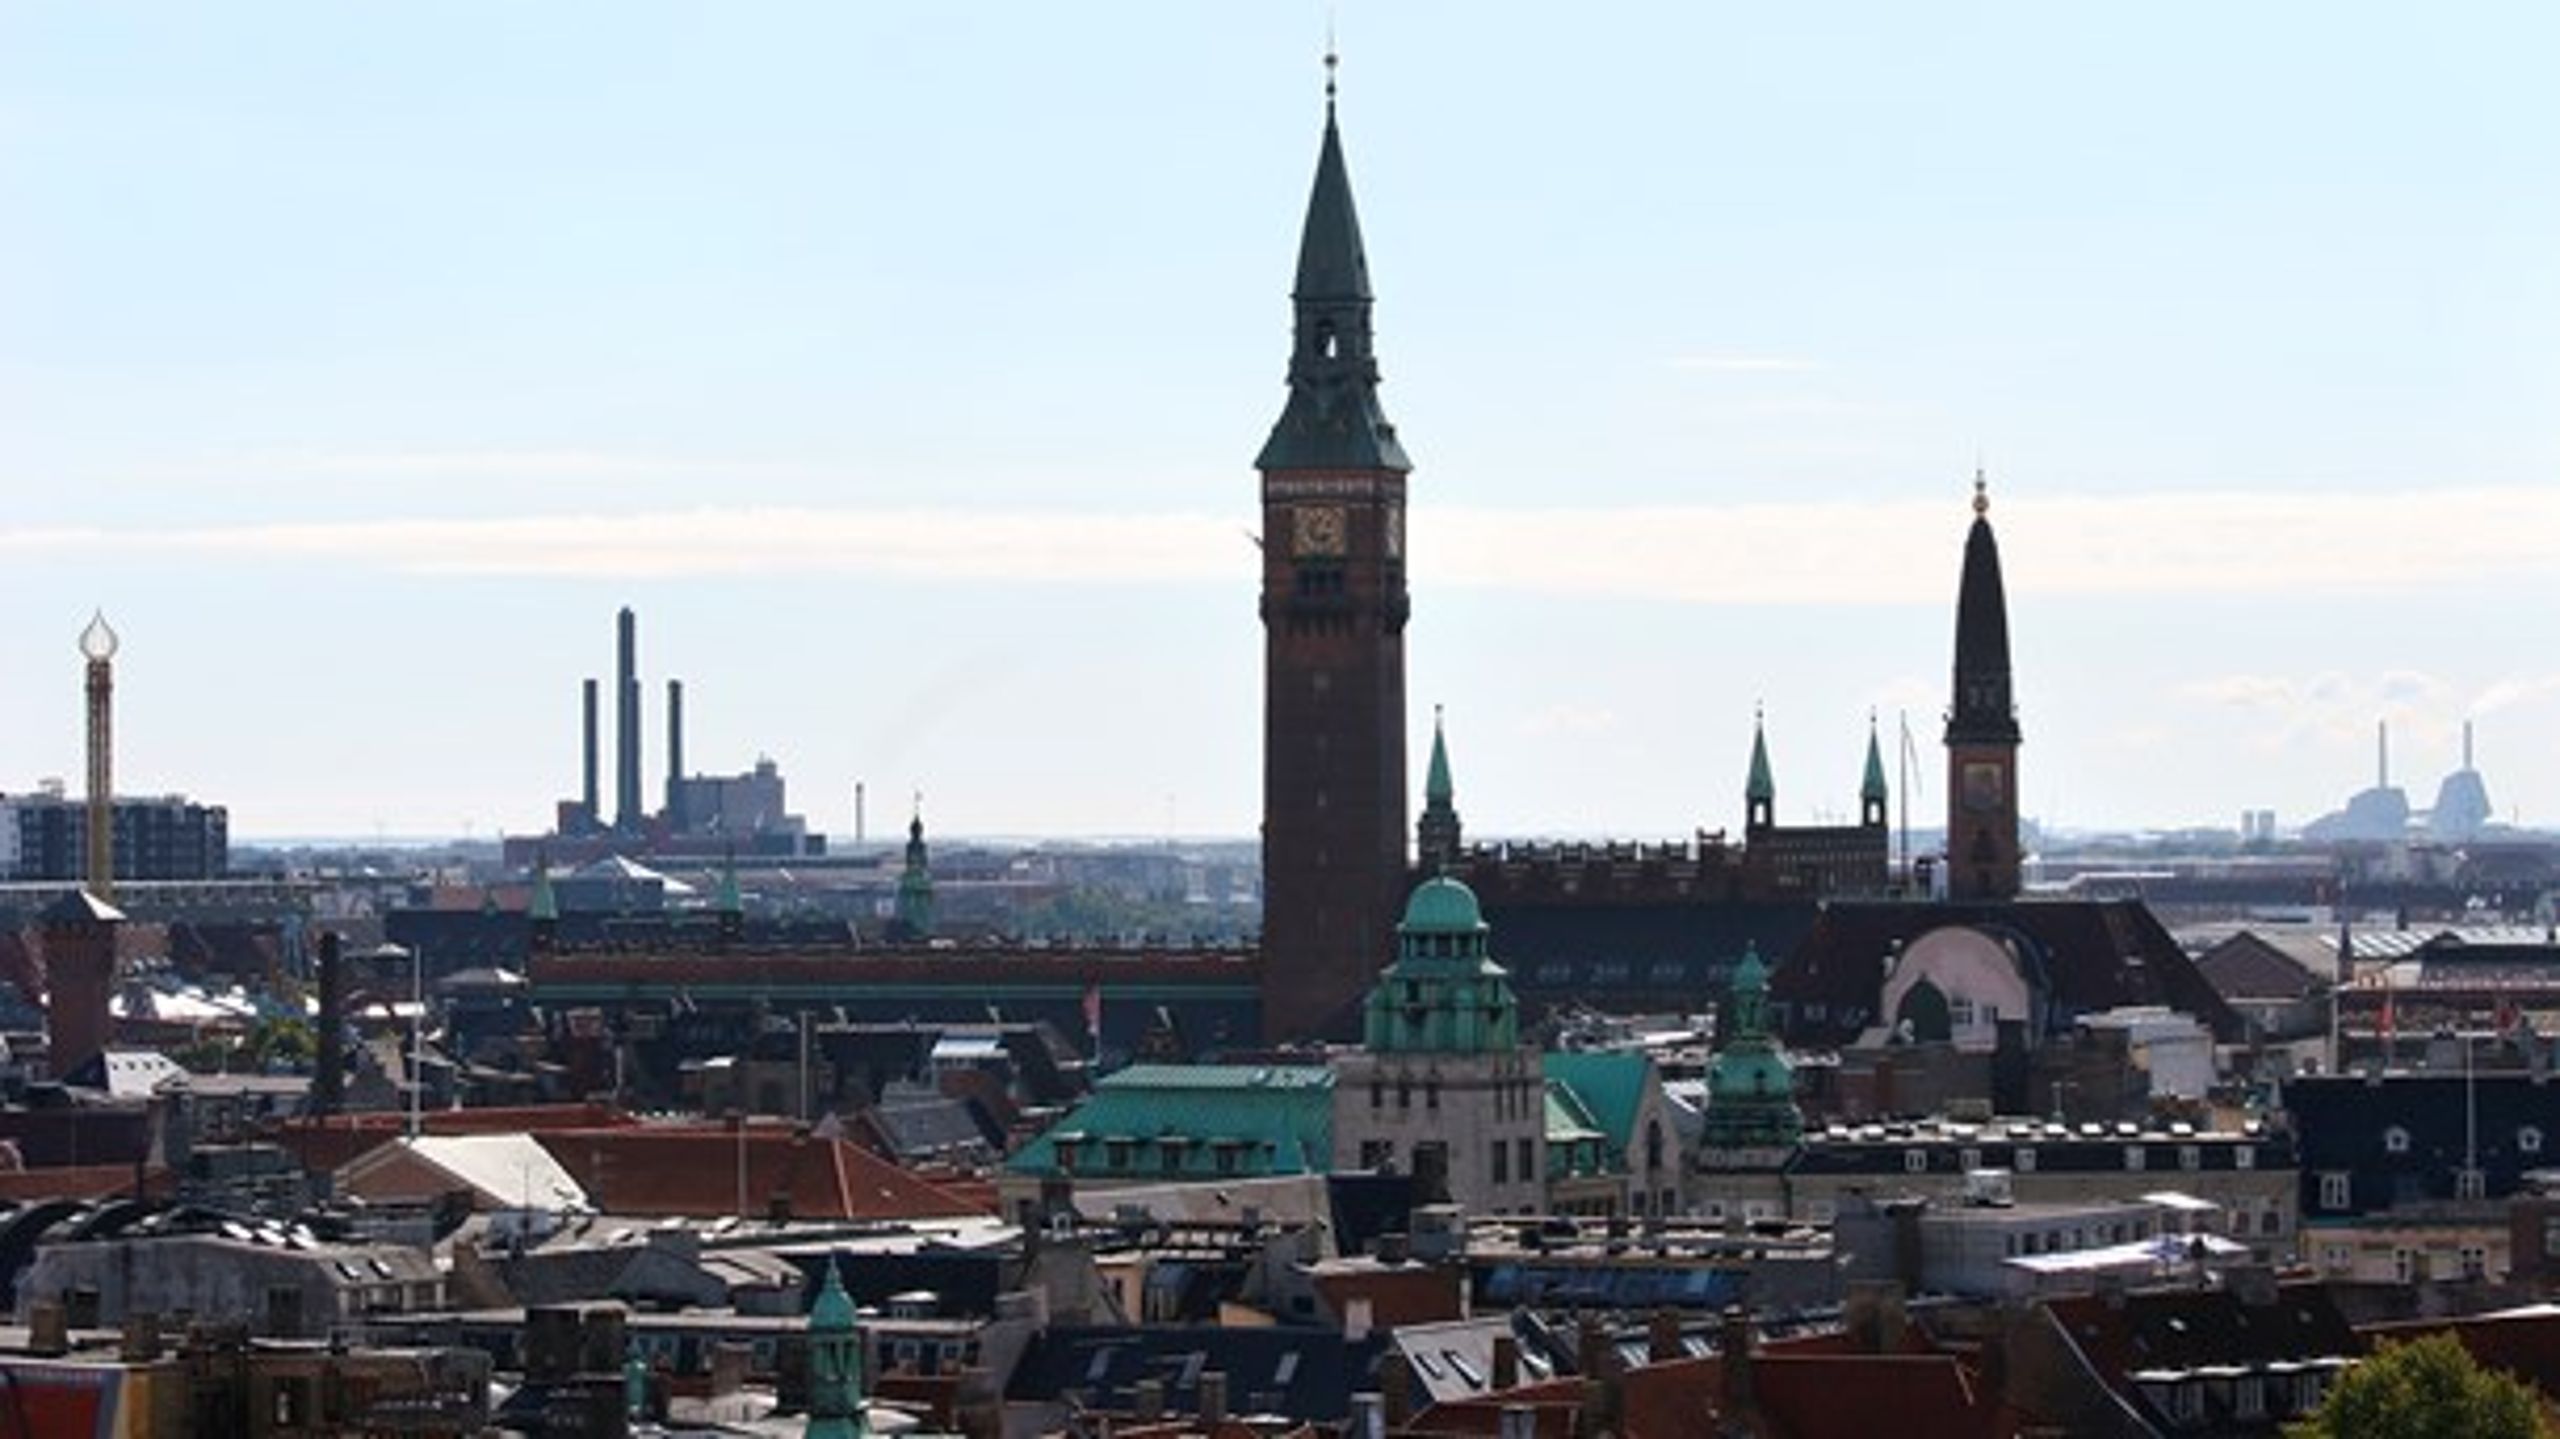 DEN BEDSTE BY: 100 års socialdemokratisk styre har gjort København til en vidunderlig by, skriver Lars Aslan.